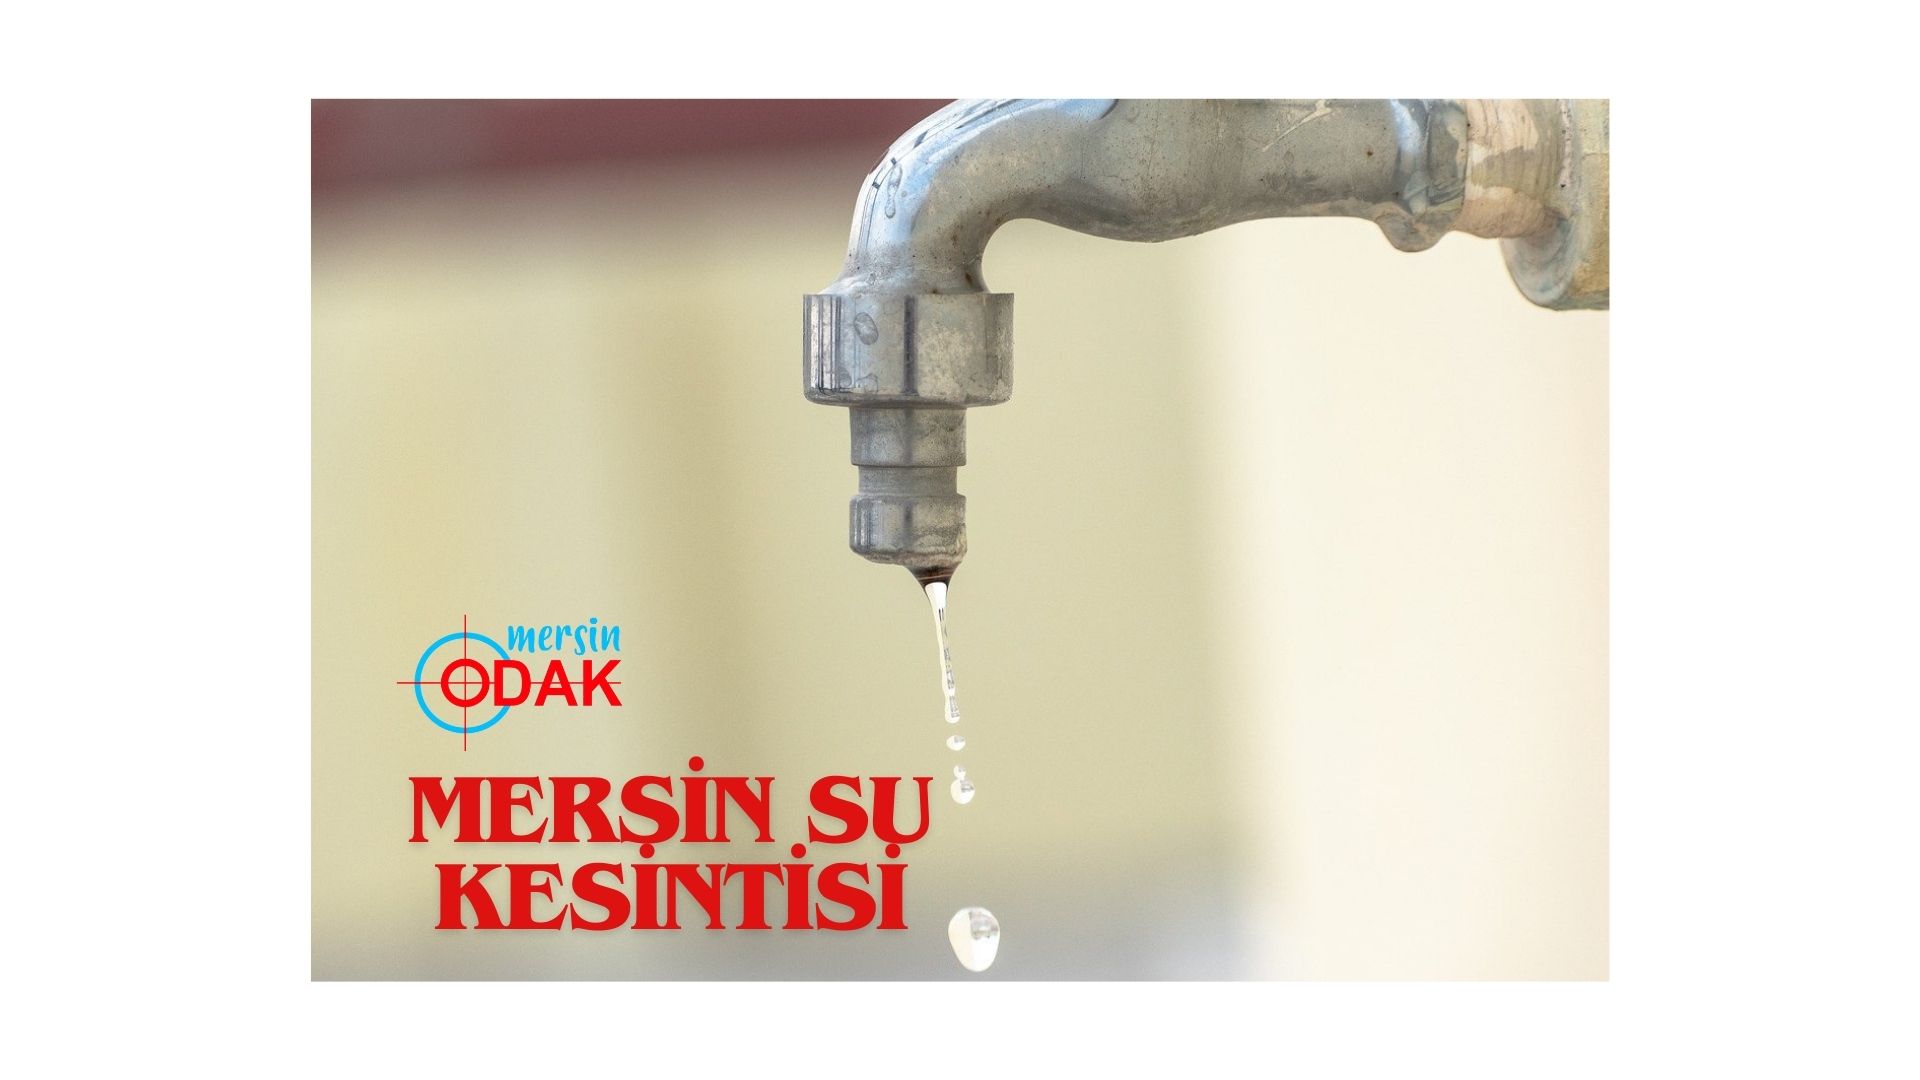 Mersin’de yaşayanların canı sıkılacak: Mersin su kesintisi!